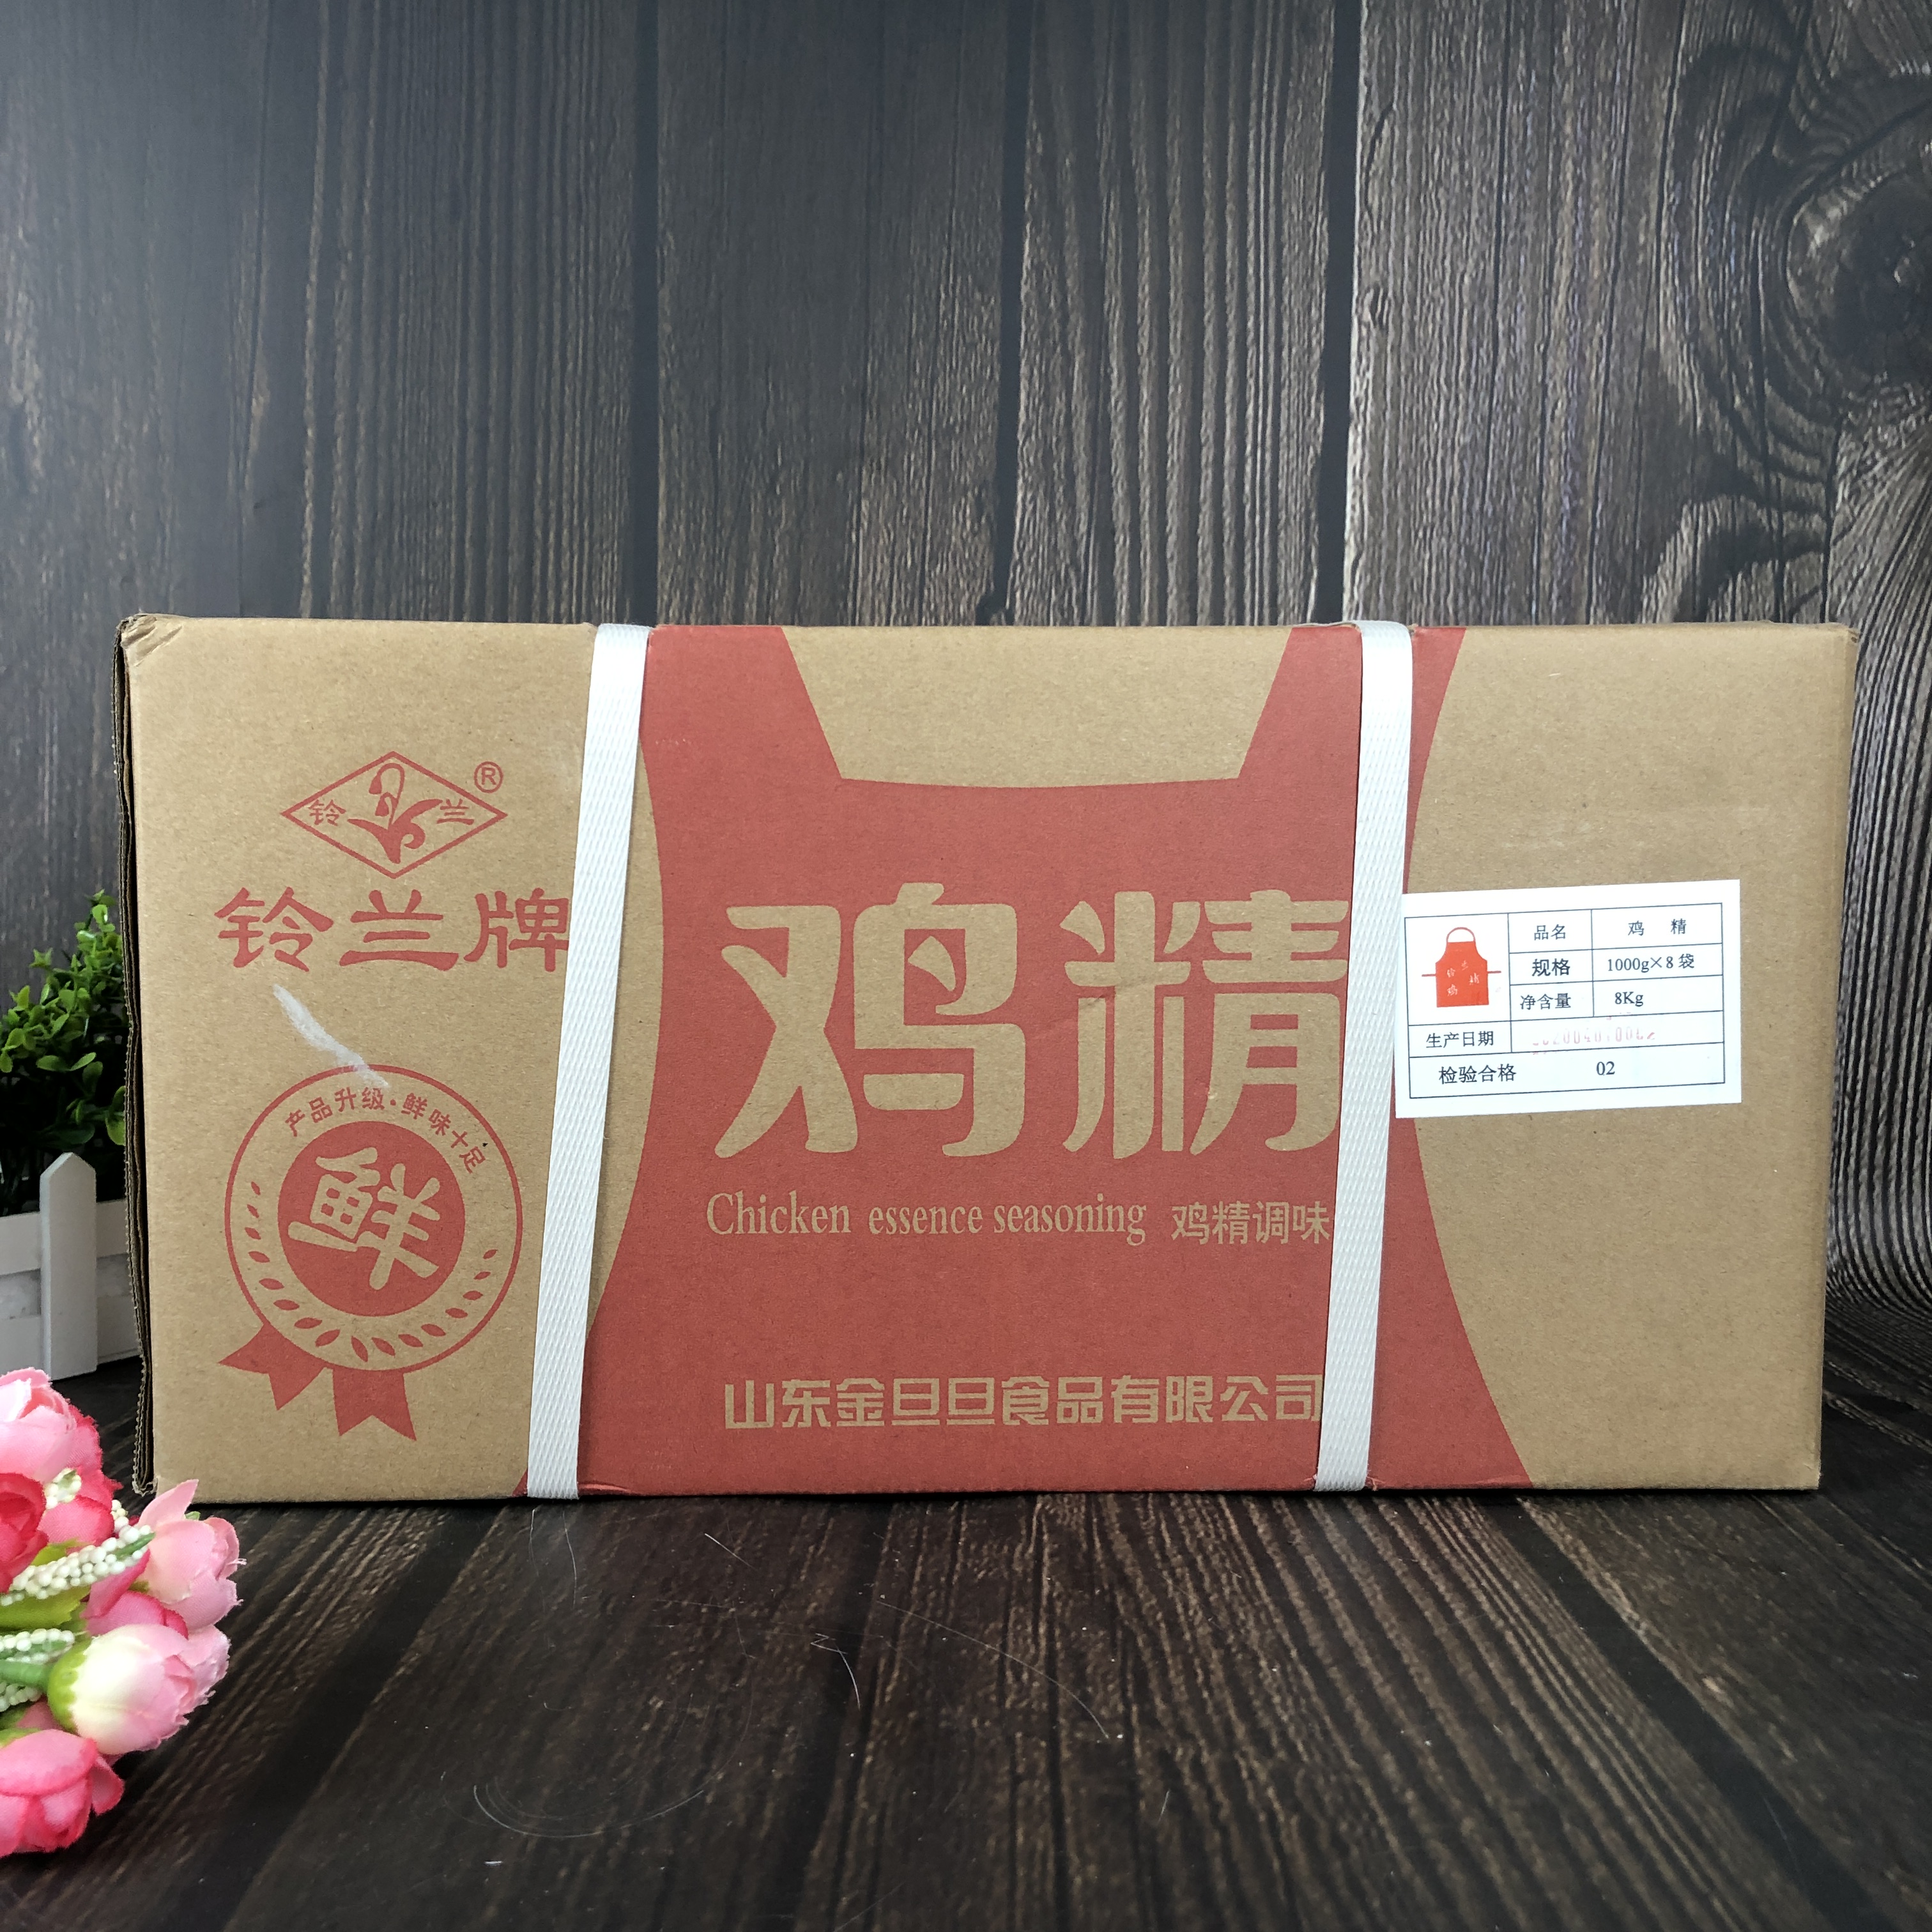 山东铃兰鸡精1000g*8袋 整箱出售 新升级鸡精调味料代替味精